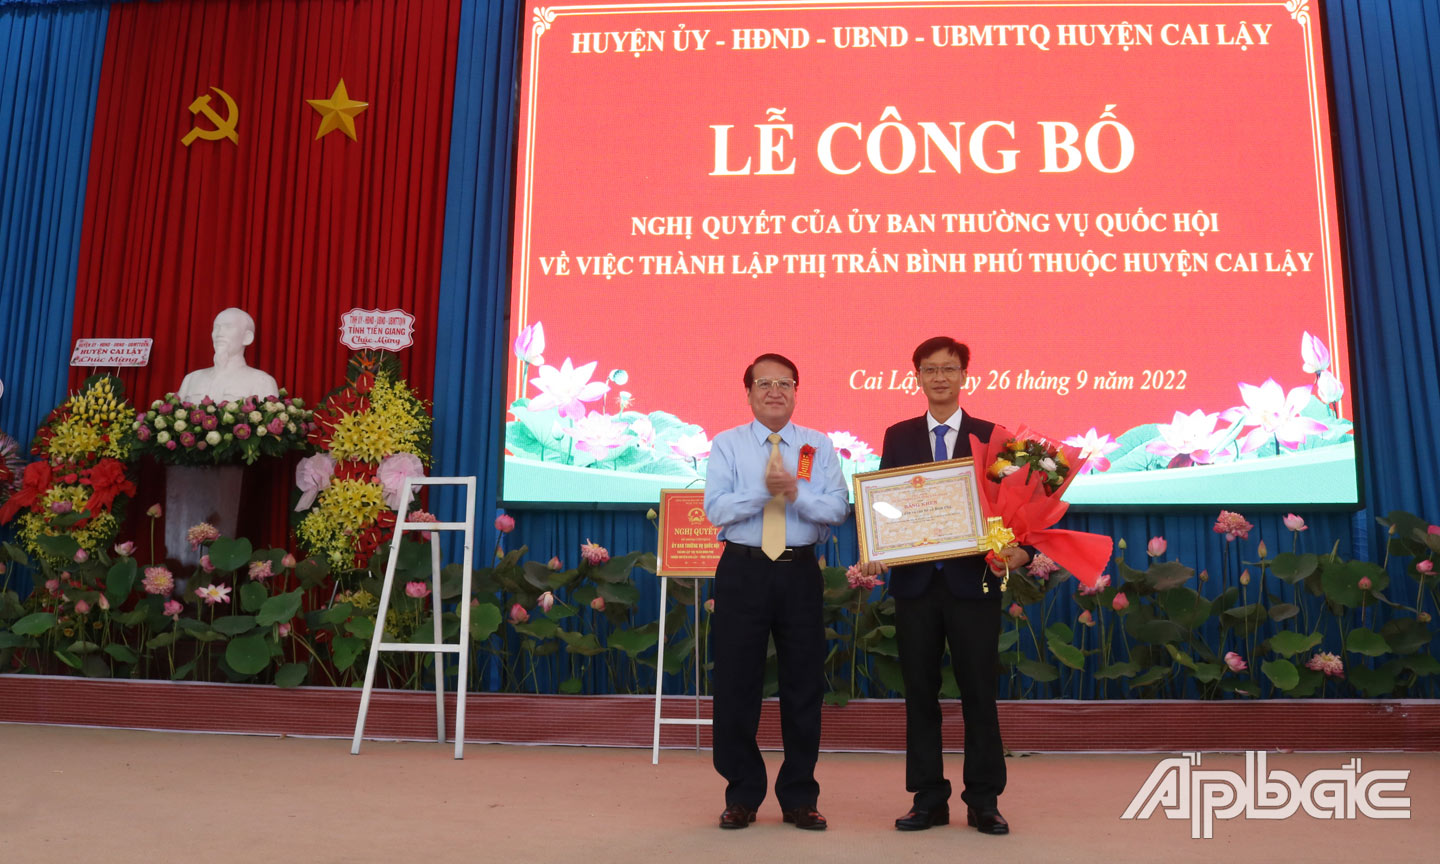 Ông Phạm Văn Trọng, Tỉnh ủy viên, Phó Chủ tịch UBND tỉnh Tiền Giang trao bằng khen của UBND tỉnh cho tập thể và cá nhân có nhiều đóng góp xây dựng thị trấn Bình Phú